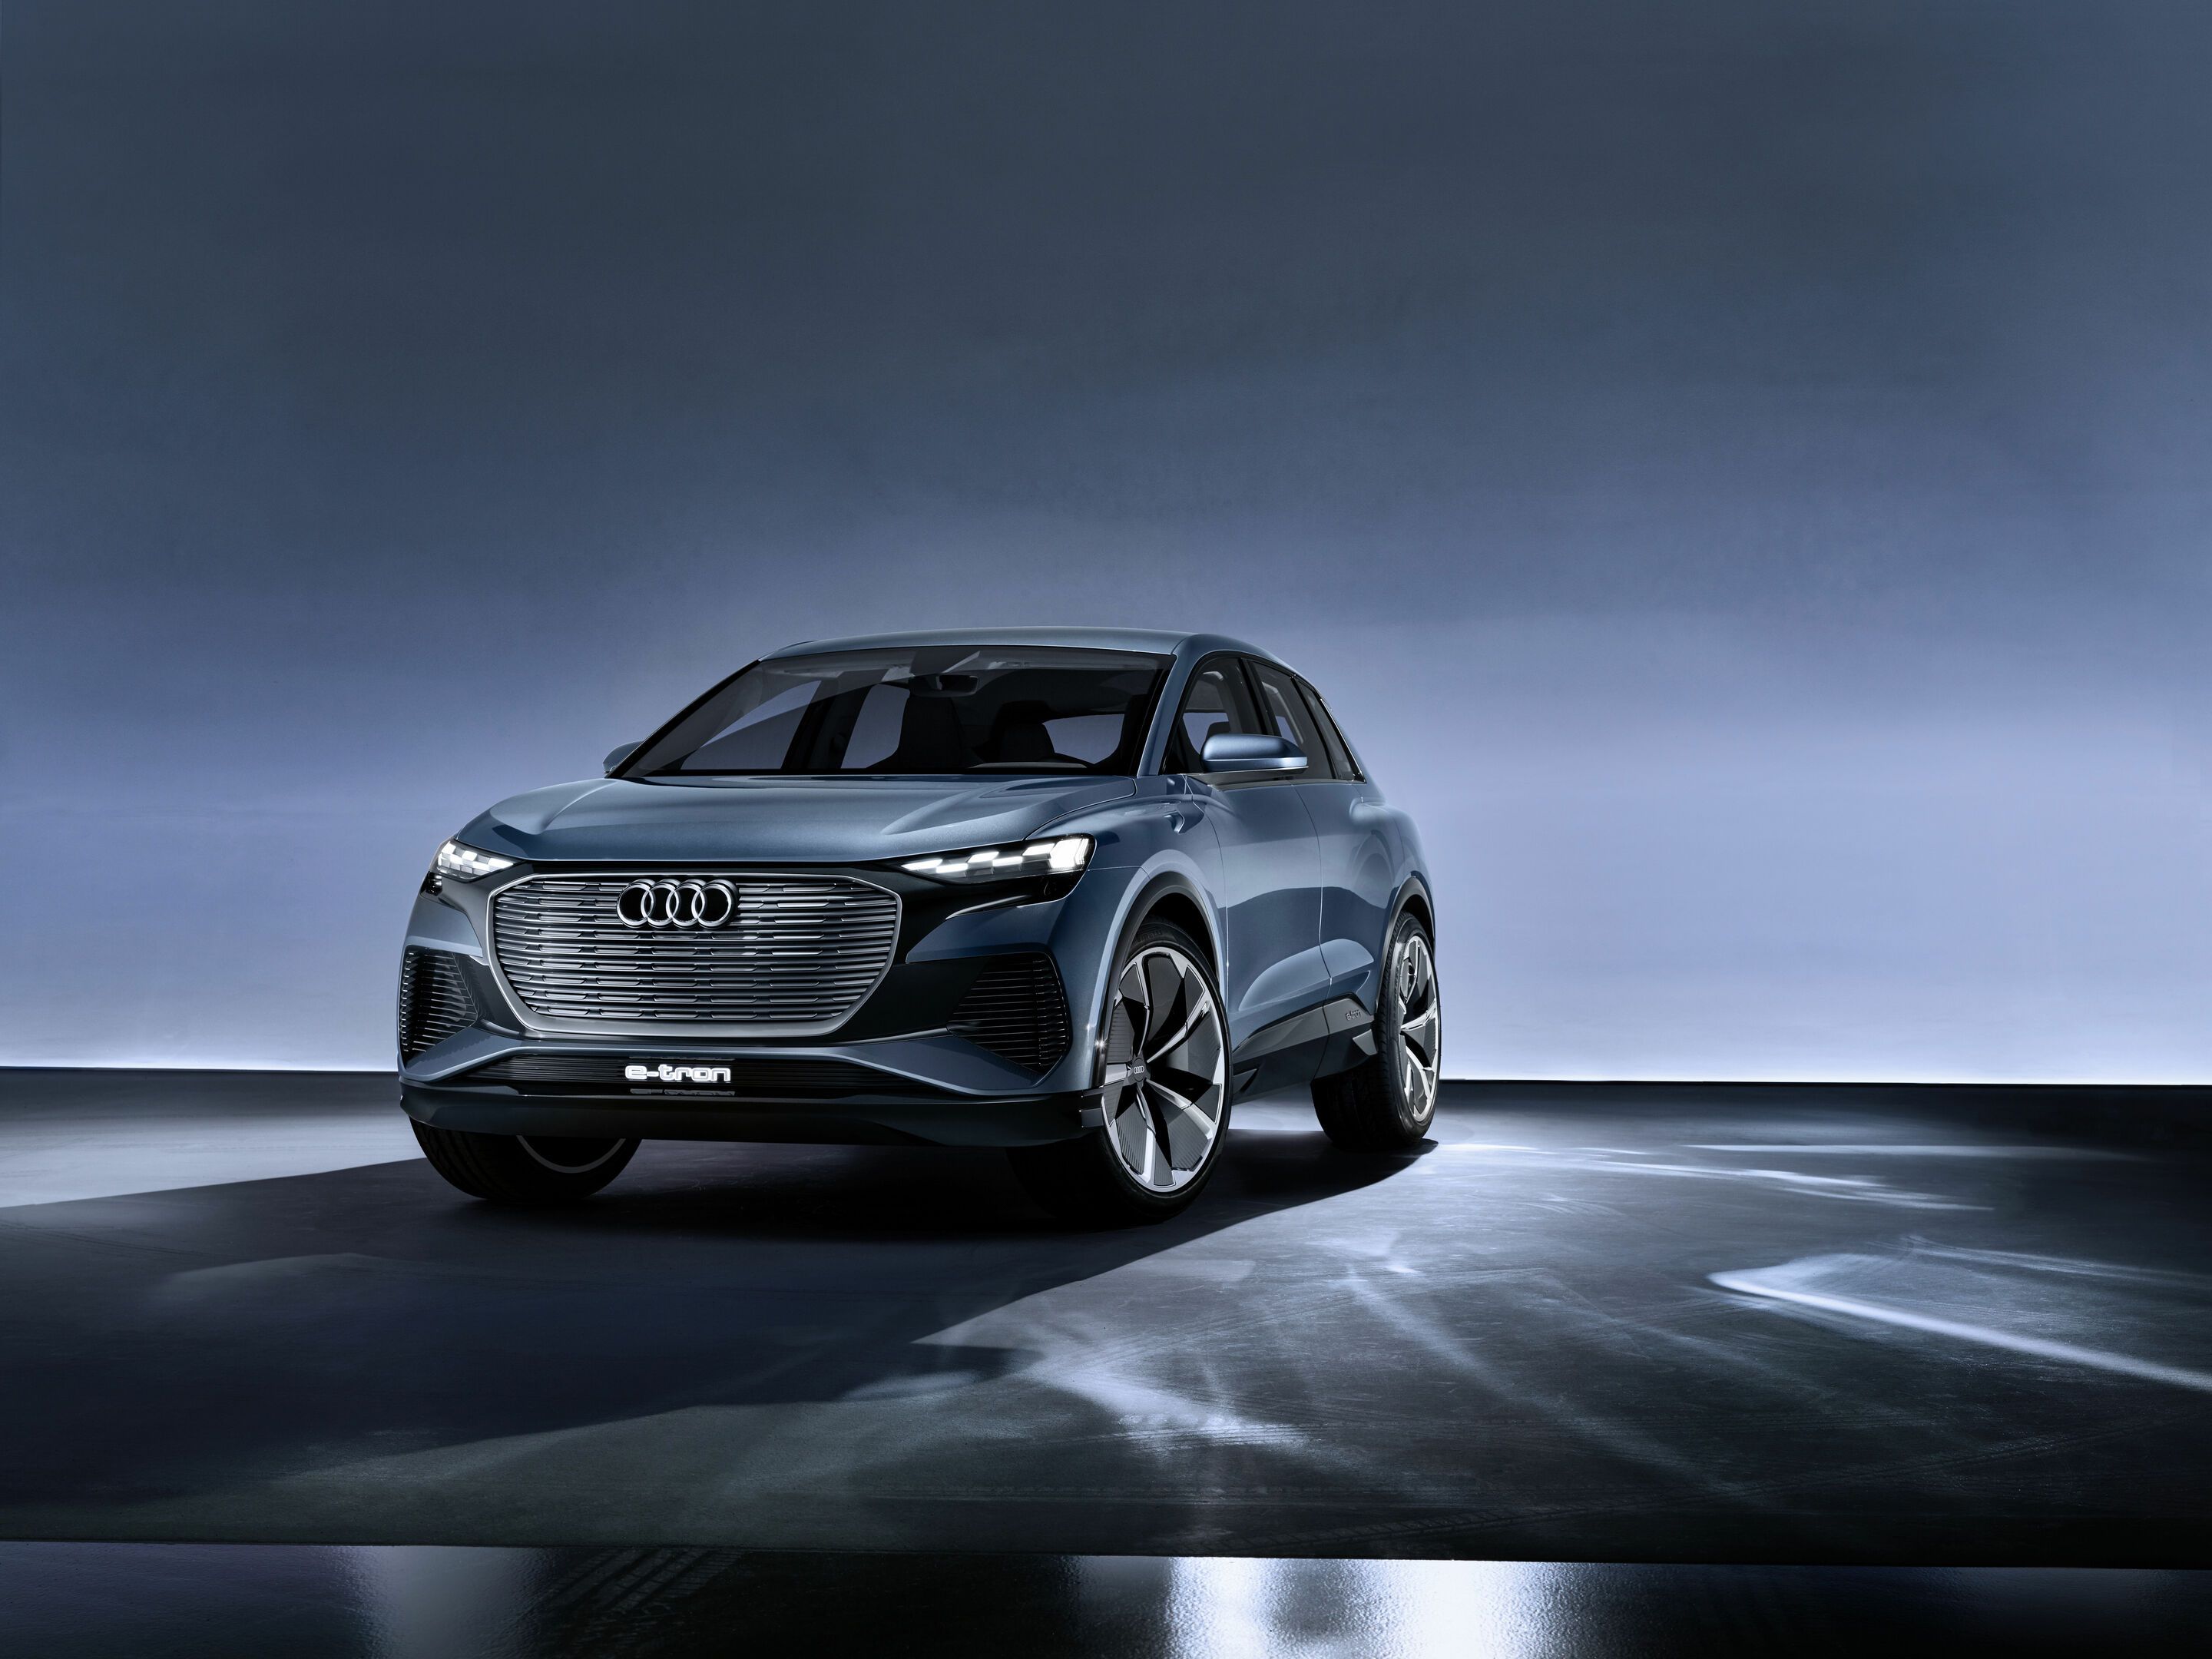 Audi Q4 etron - Endlich nachhaltiges Zubehör für die Modelle der